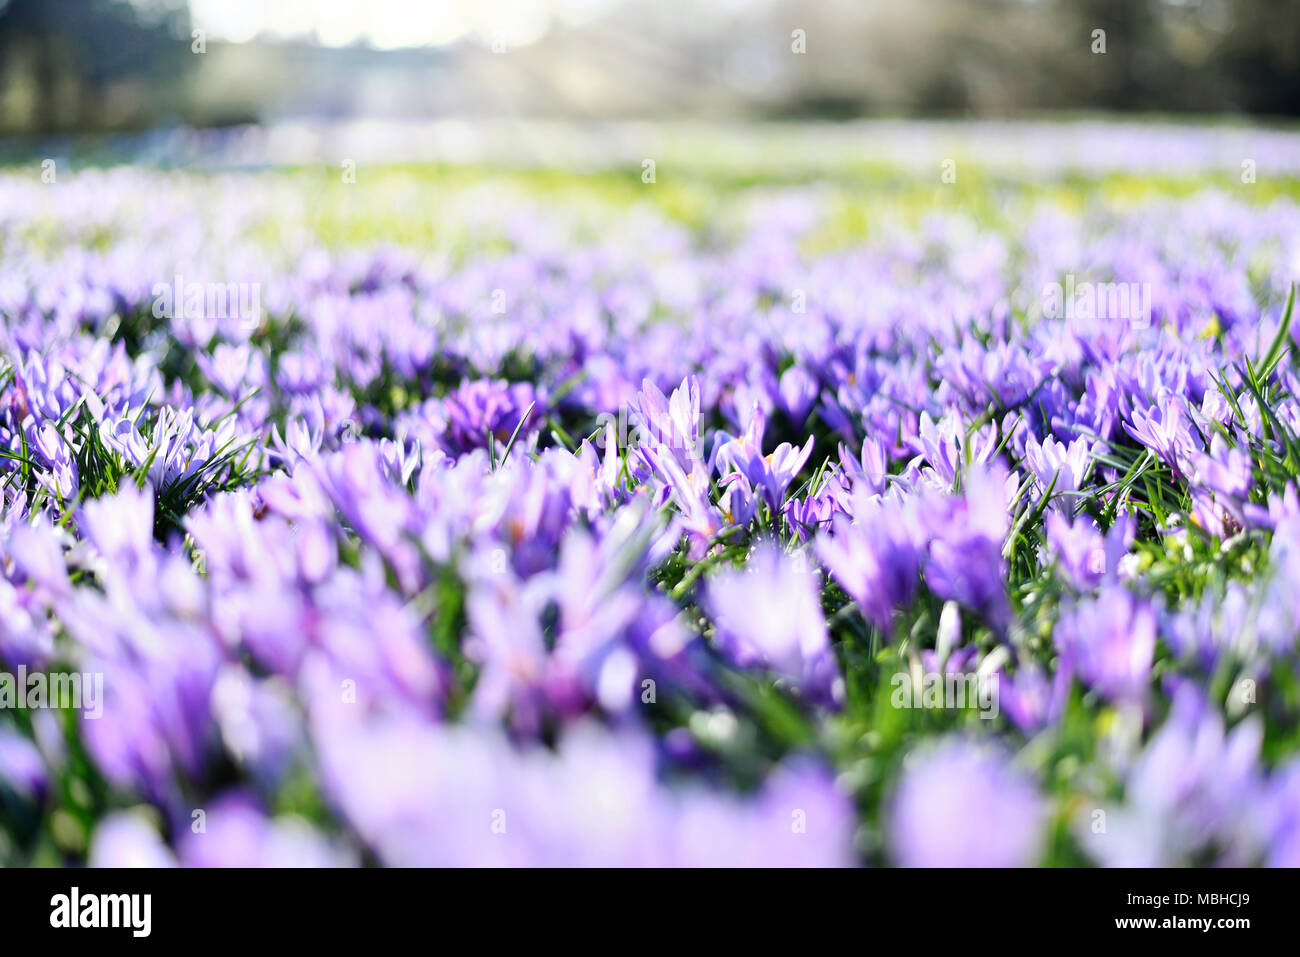 Lila Krokusse, Frühlingsblumen wit selektiven Fokus. Idyllische Frühlingswiese und blauen Krokus Blumen. Stockfoto